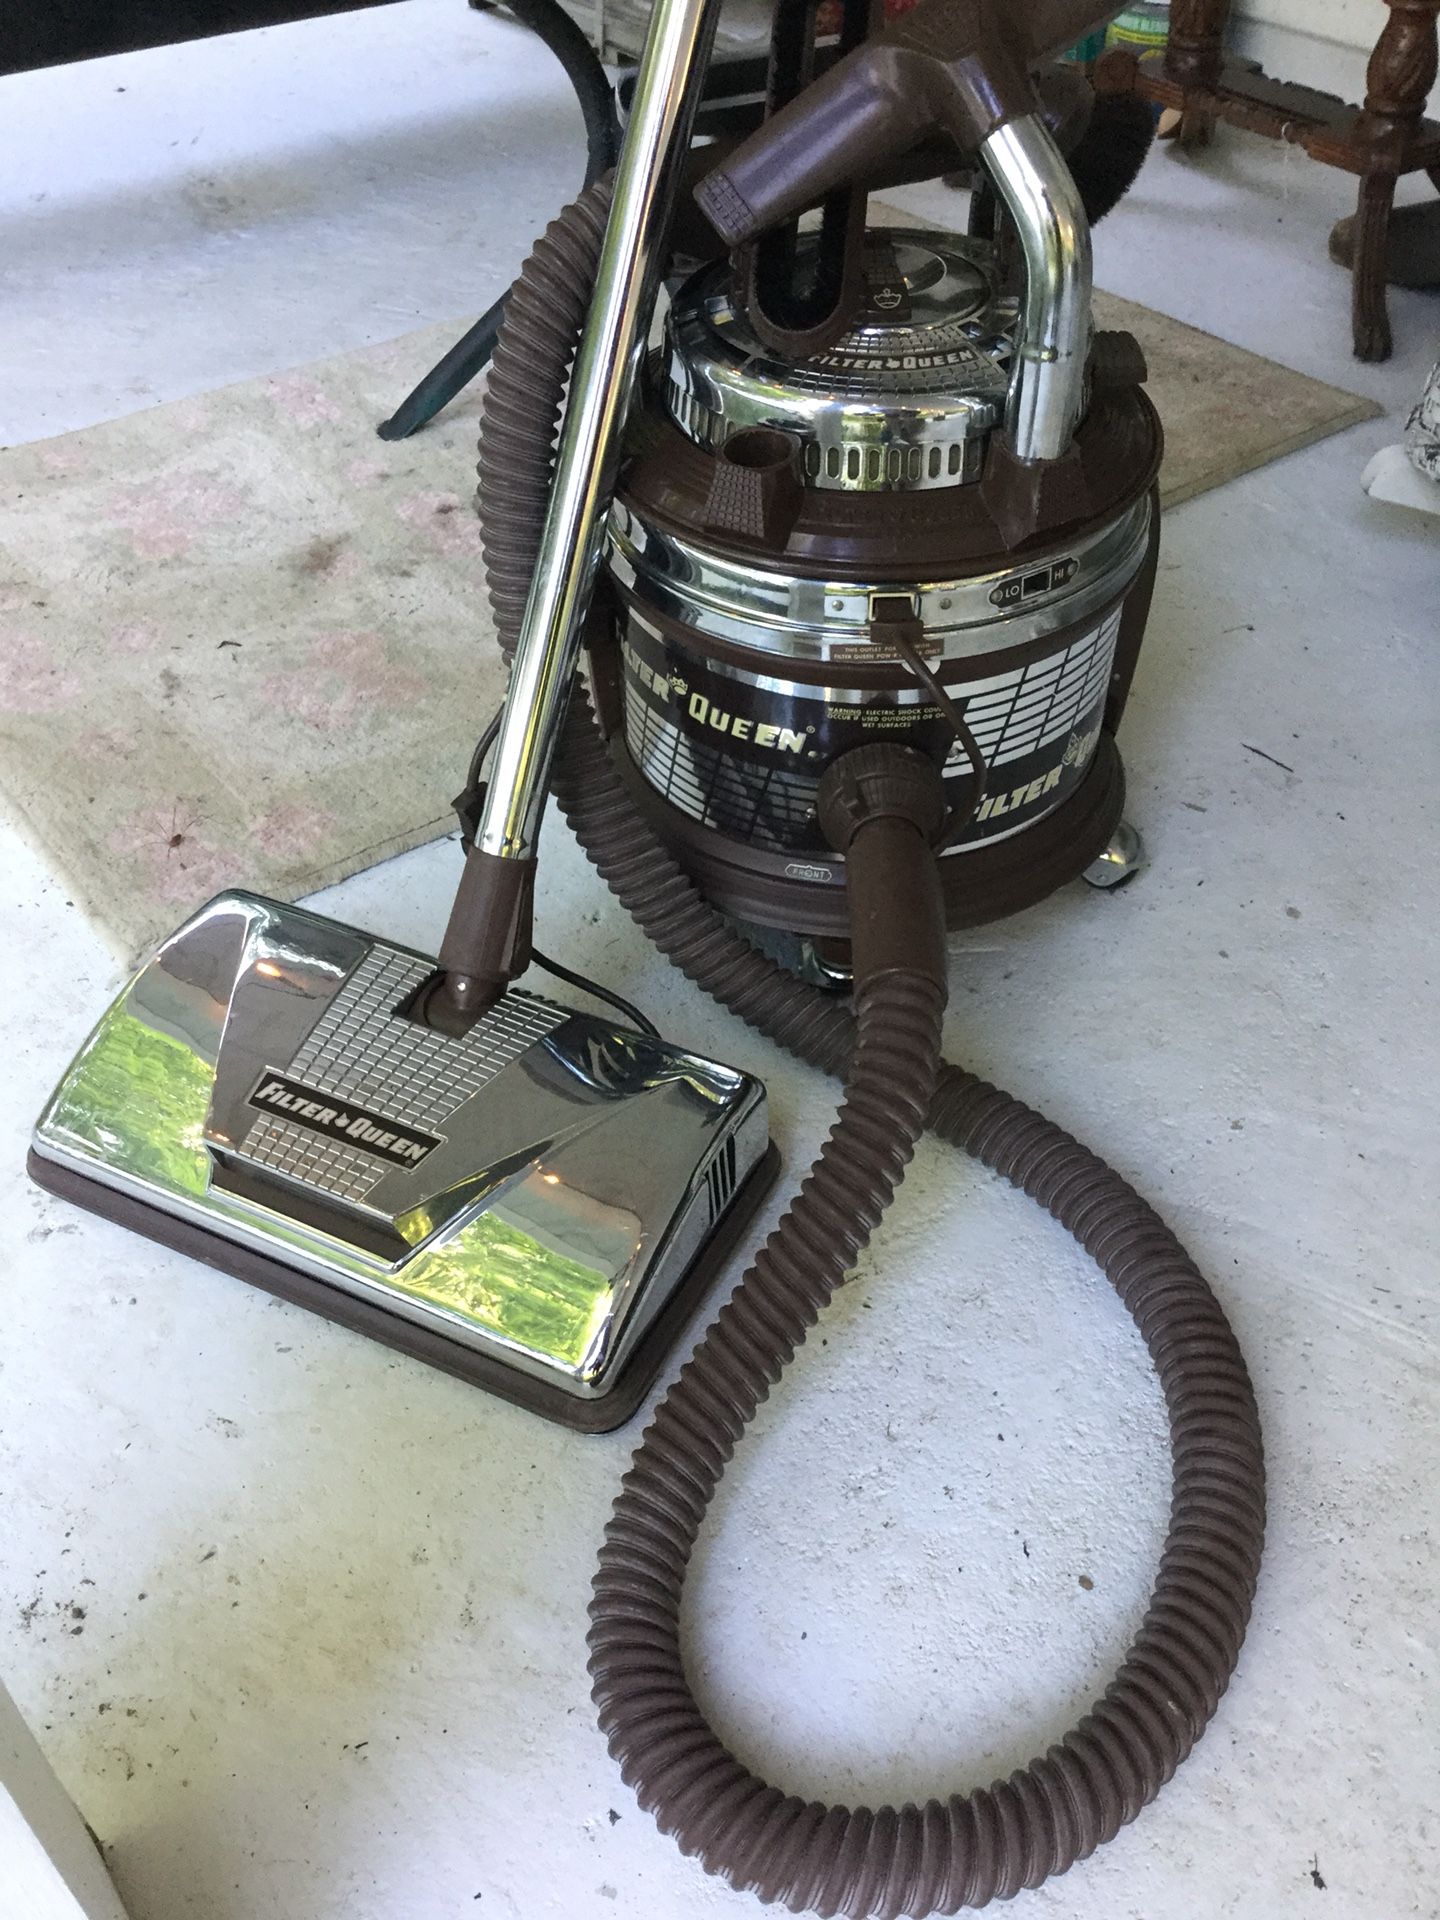 Vintage Working Filter Queen Vacuum